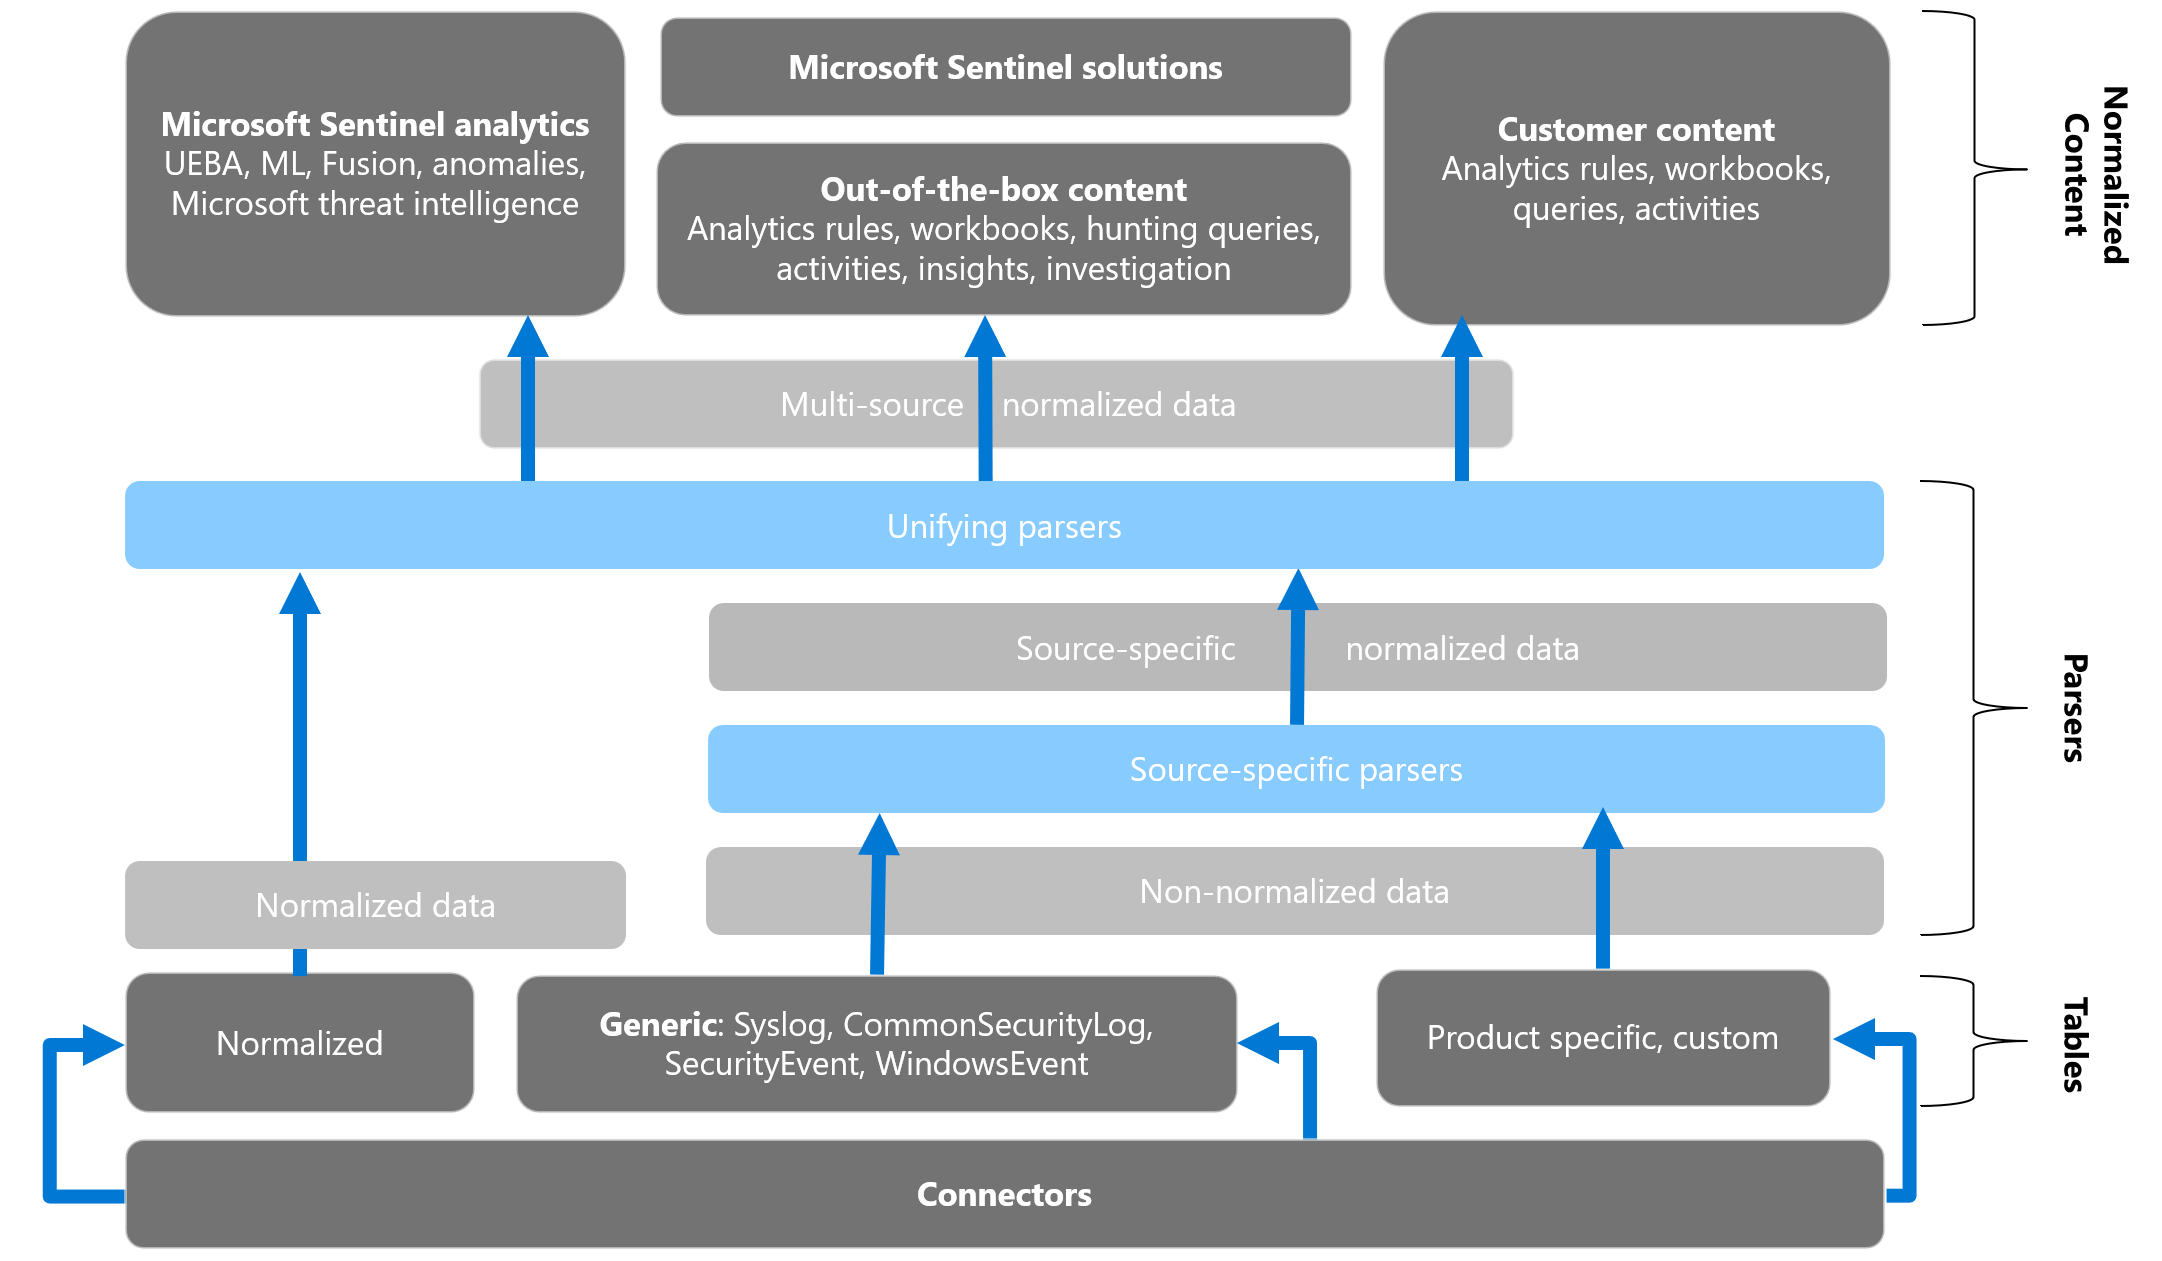 Nem normalizált adatkonvertálási folyamat és használat a Microsoft Sentinelben